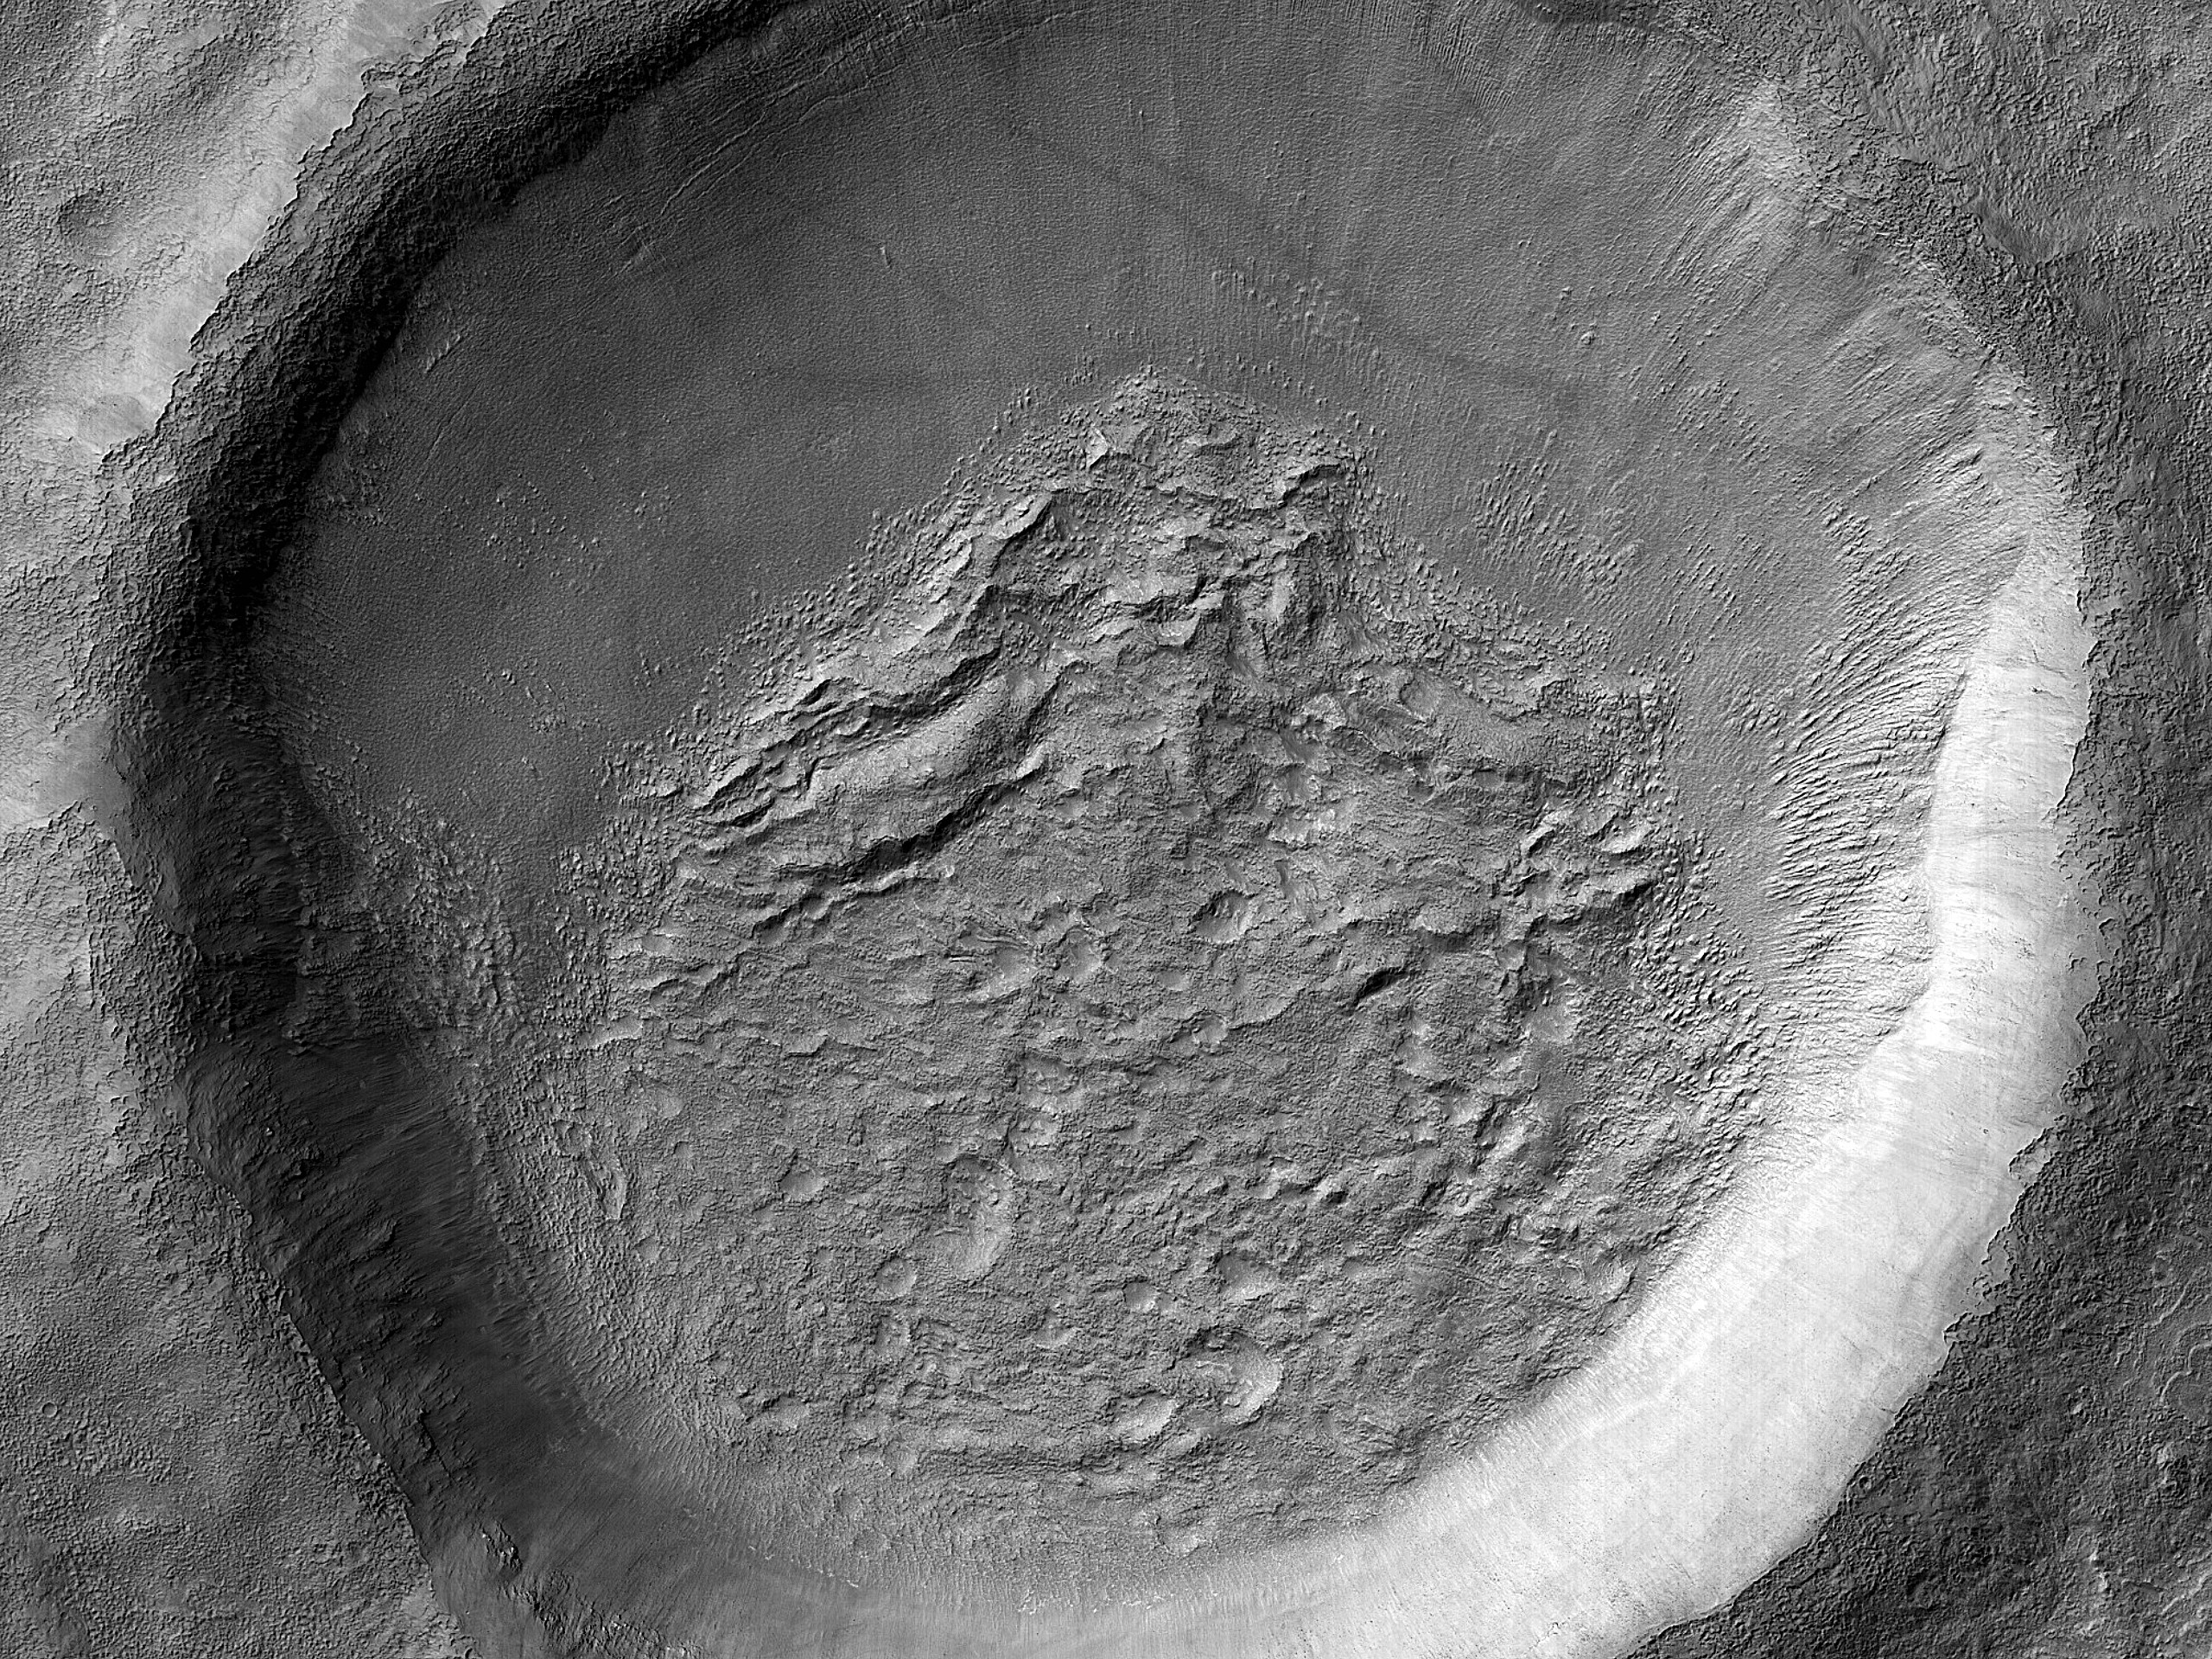 Crater Floor Features Northeast of Reull Vallis